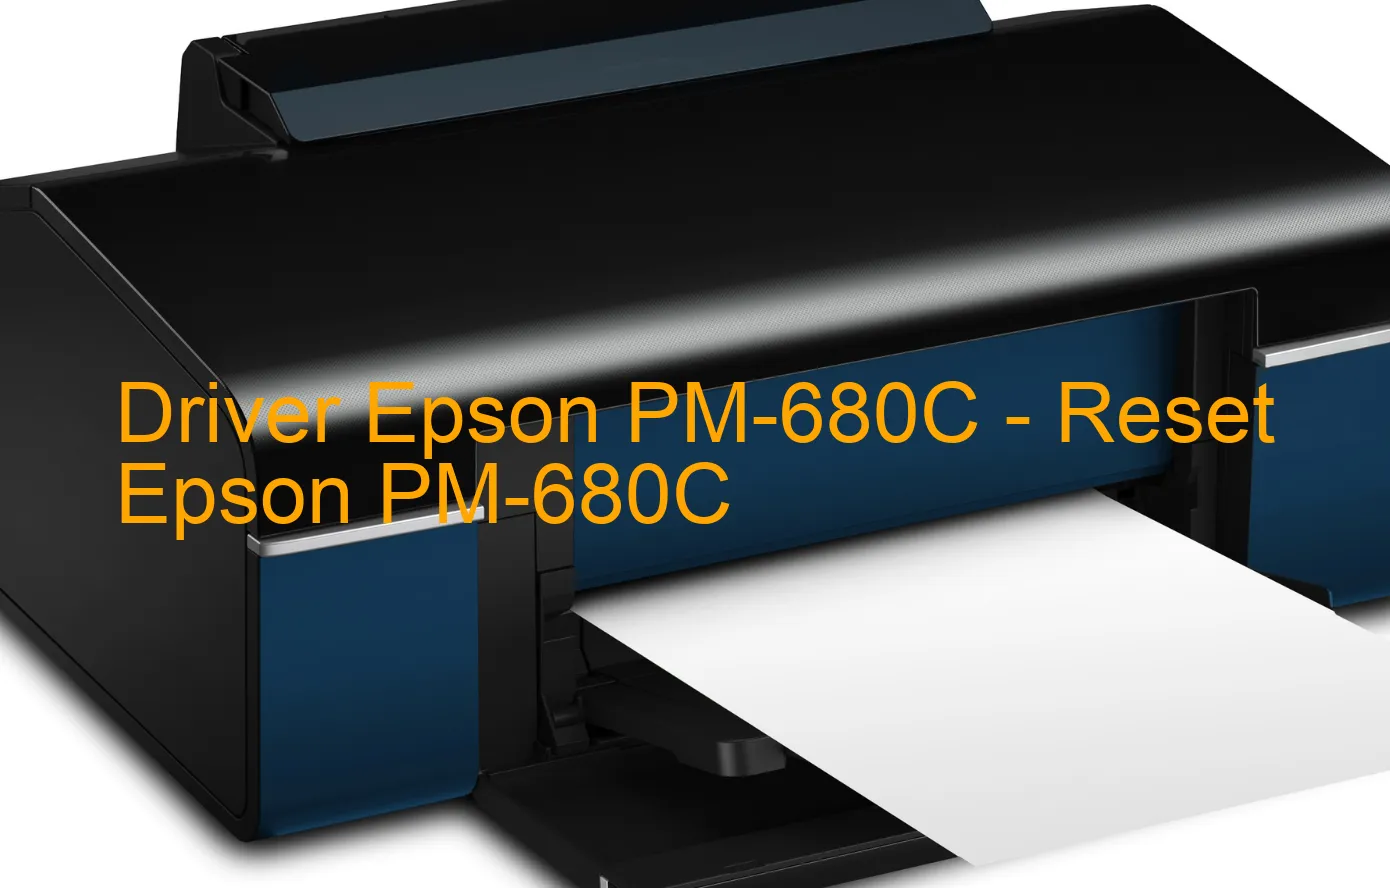 Epson PM-680Cのドライバー、Epson PM-680Cのリセットソフトウェア